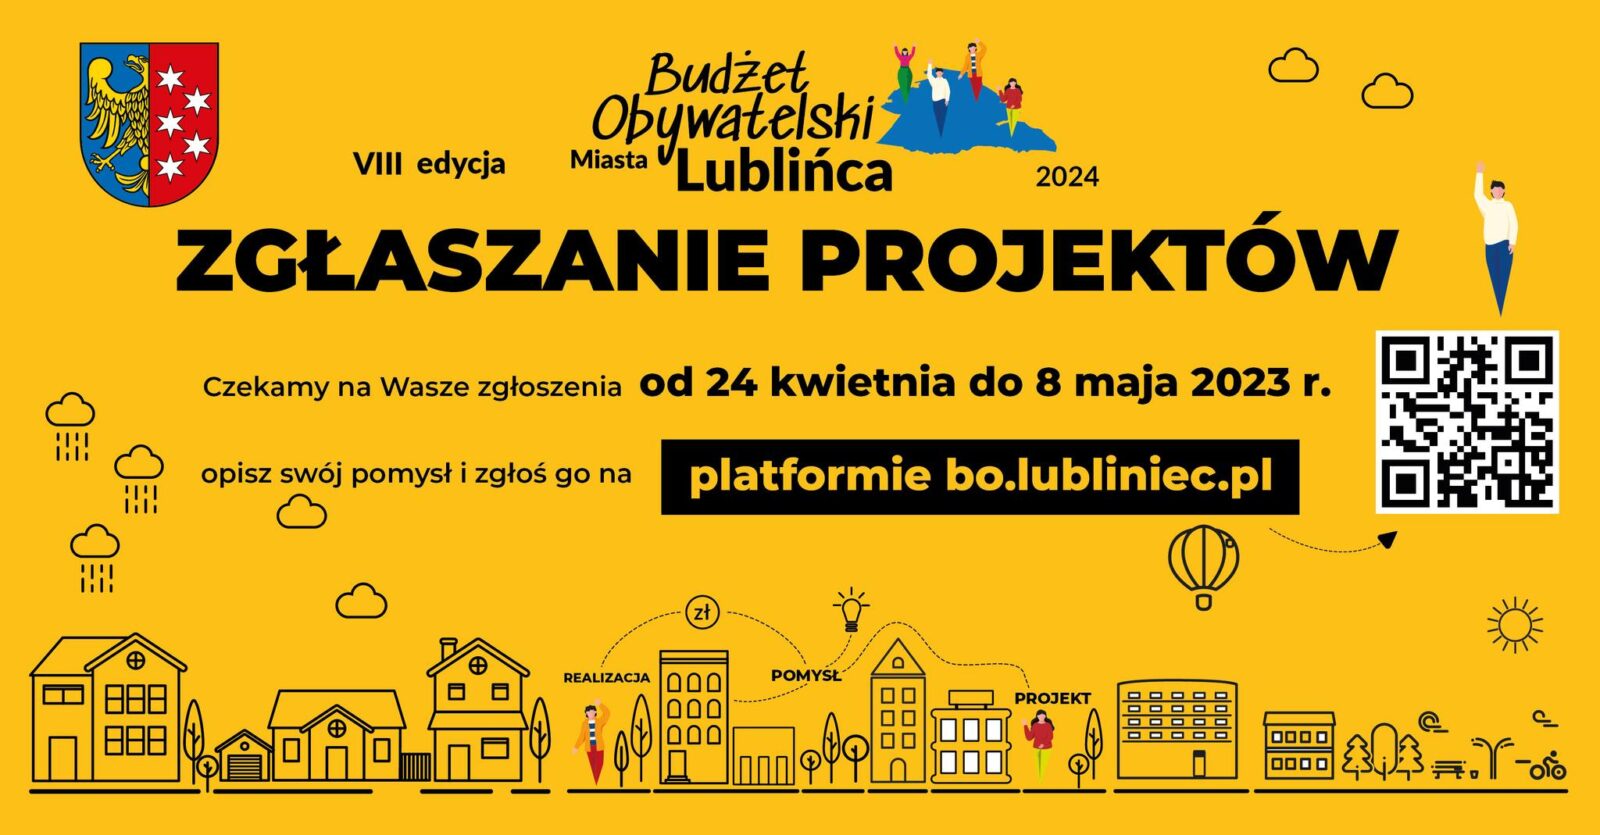 Lubliniec. Można już składać wnioski do Budżetu Obywatelskiego Miasta Lublińca 2